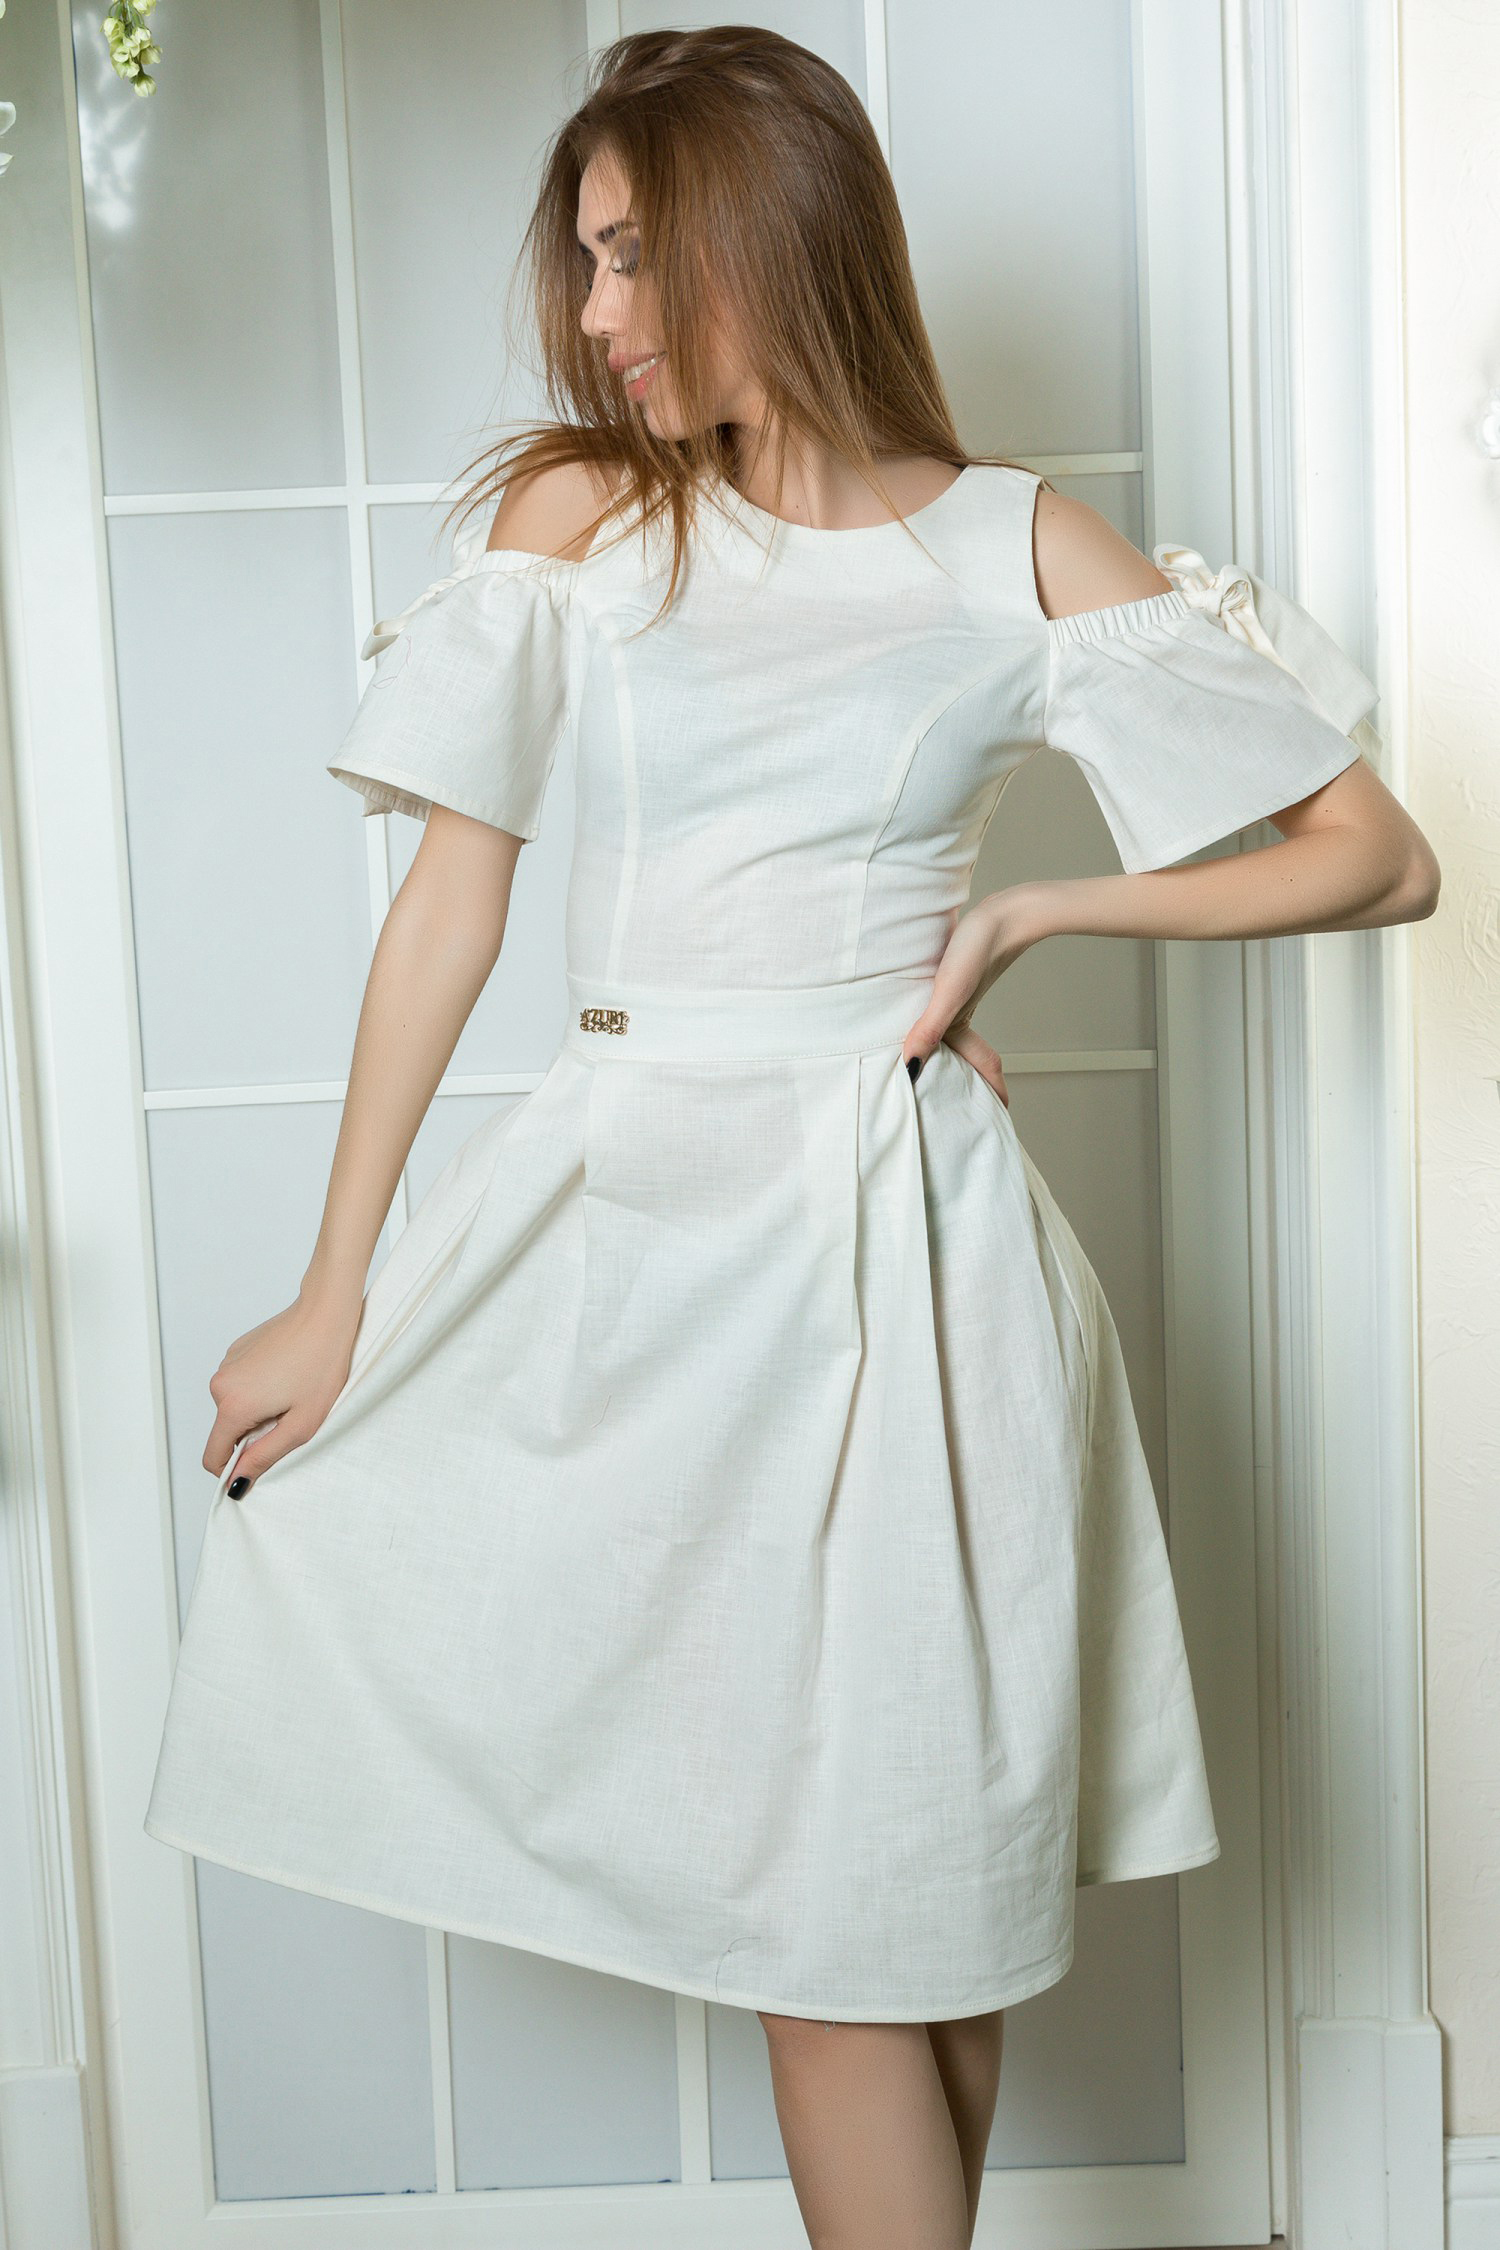 Milk linen dress with bare shoulders